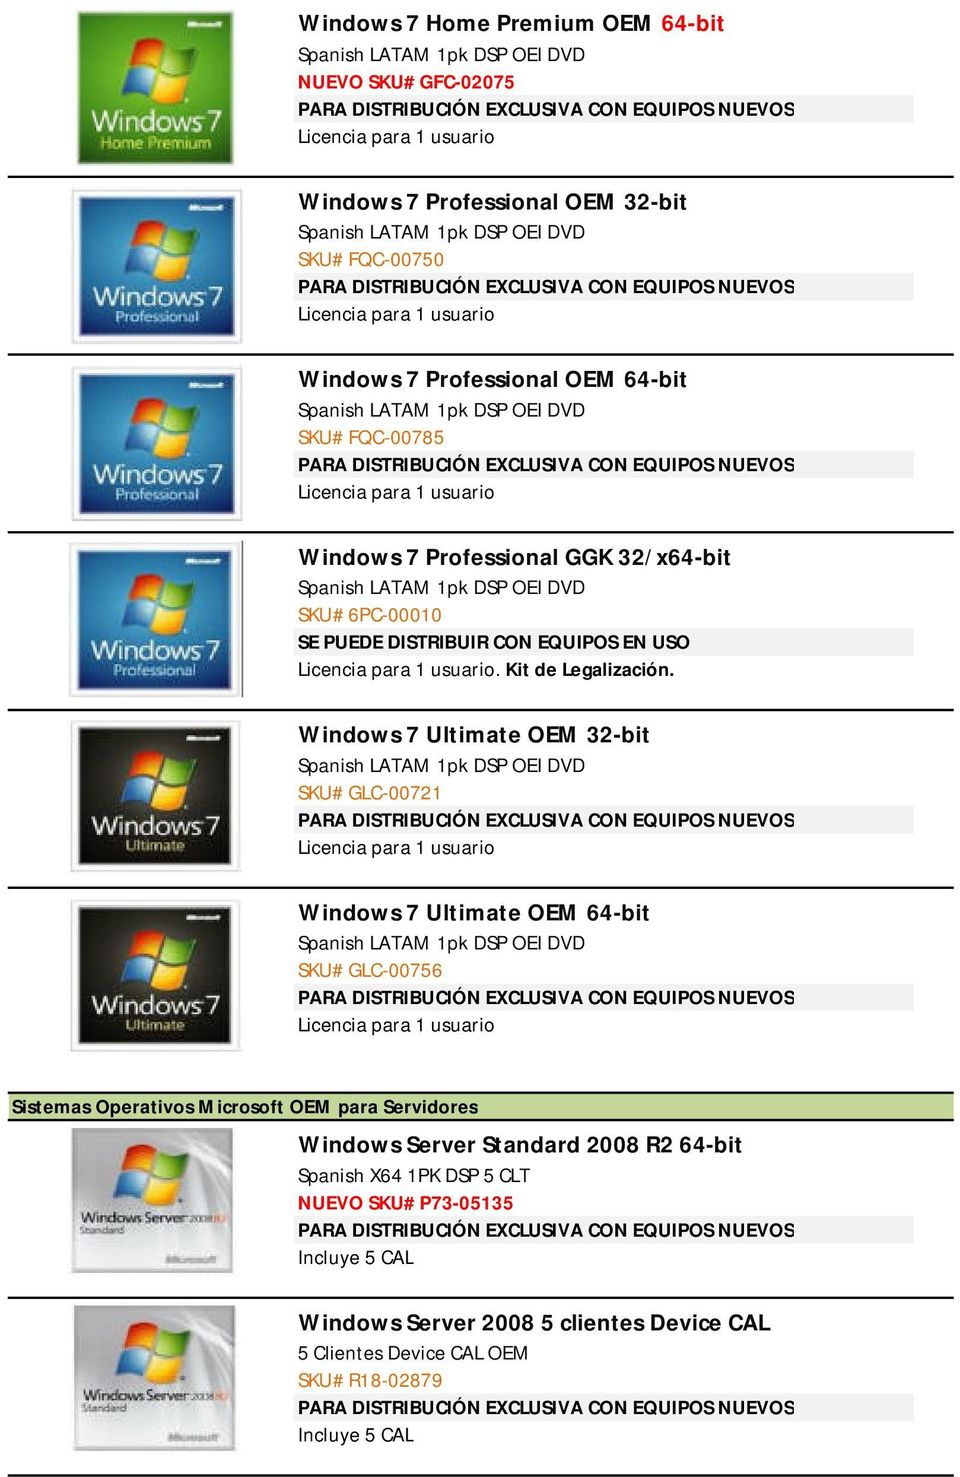 DISTRIBUCIÓN EXCLUSIVA CON EQUIPOS NUEVOS Licencia para 1 usuario Windows 7 Professional GGK 32/x64-bit Spanish LATAM 1pk DSP OEI DVD SKU# 6PC-00010 SE PUEDE DISTRIBUIR CON EQUIPOS EN USO Licencia